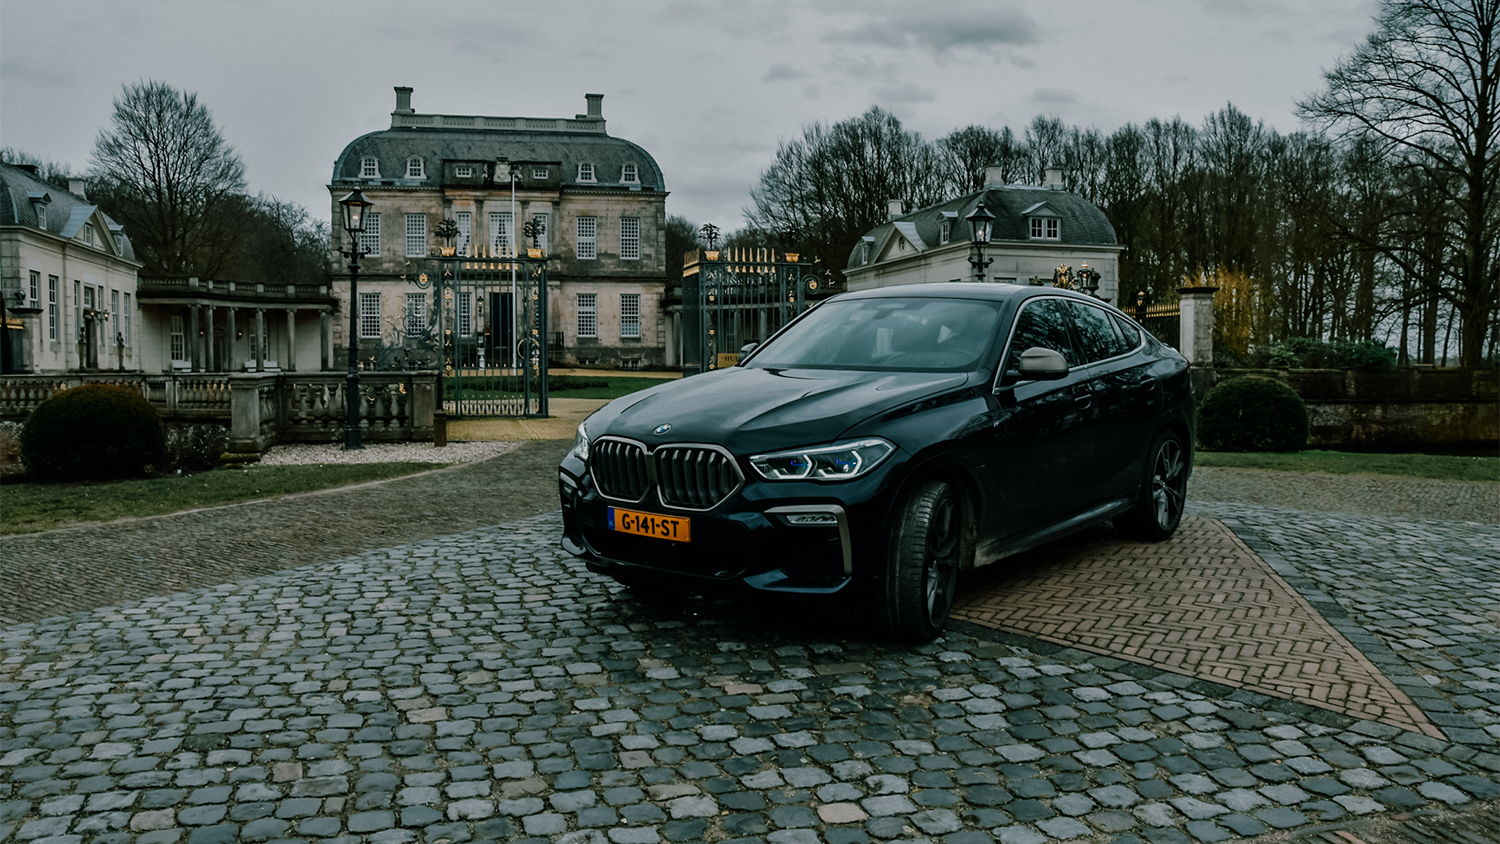 Autotest: Kastelenrondje achterhoek met de BMW X6 M50i